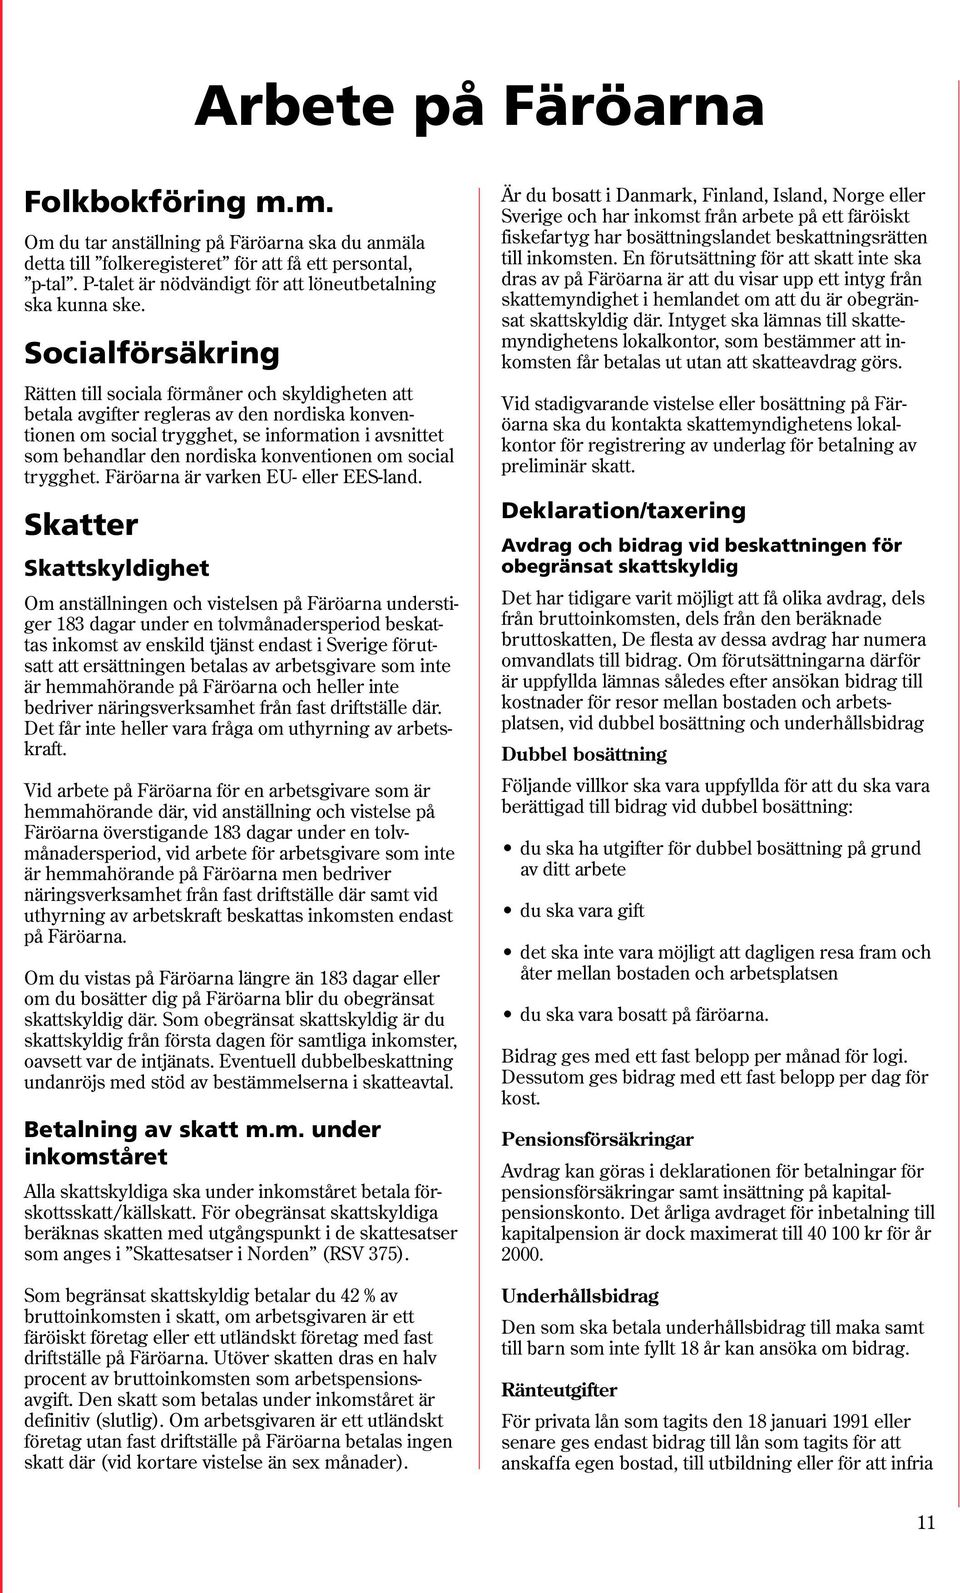 Socialförsäkring Rätten till sociala förmåner och skyldigheten att betala avgifter regleras av den nordiska konventionen om social trygghet, se information i avsnittet som behandlar den nordiska